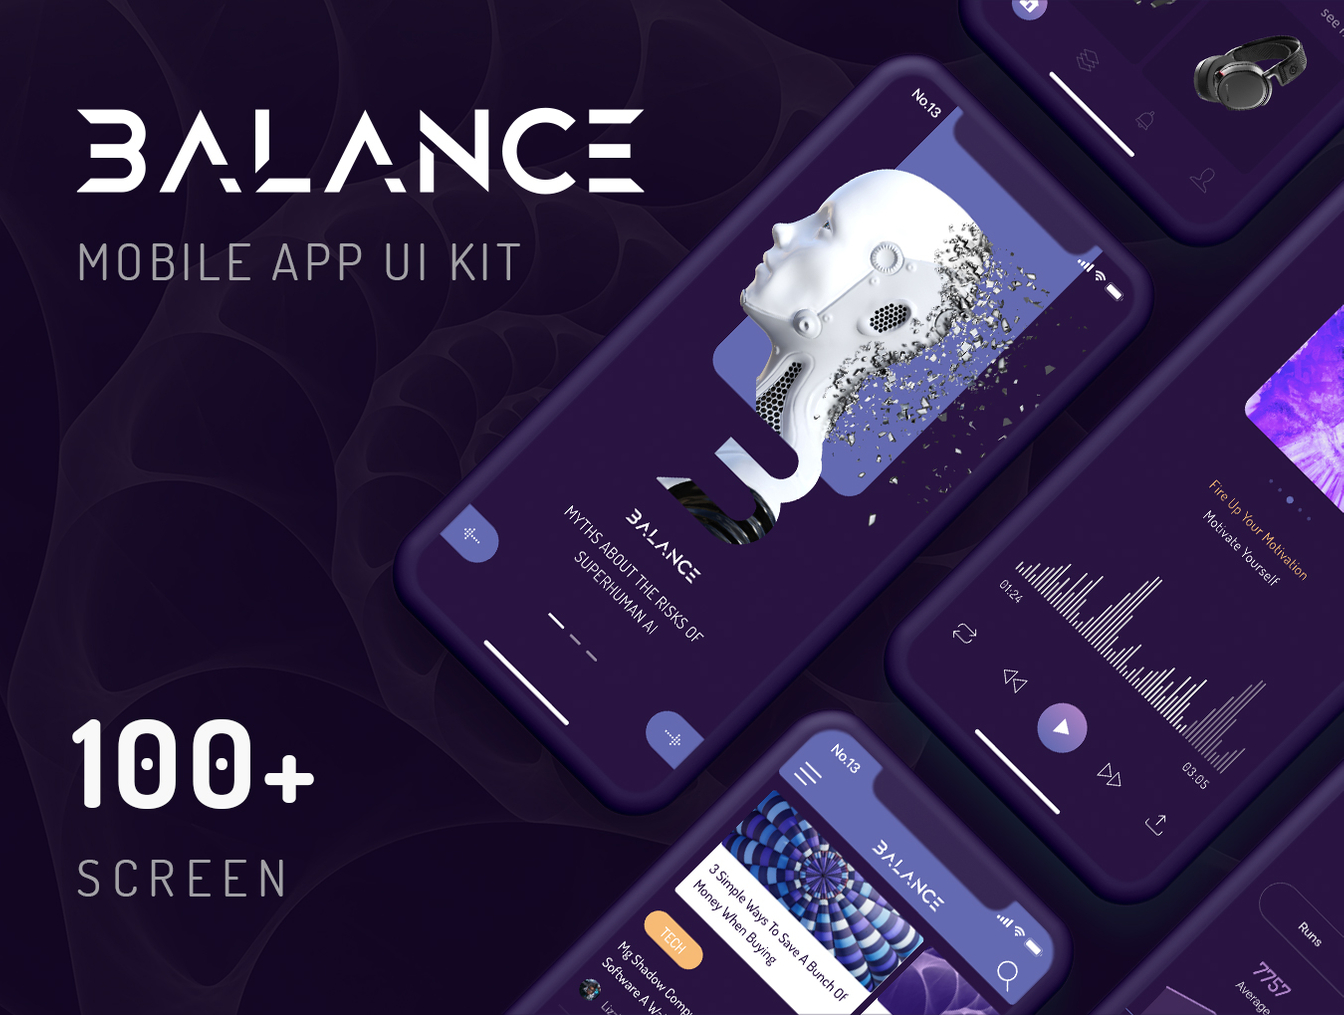 炫酷智能平衡移动UI套件 Balance Mobile UI Kit插图